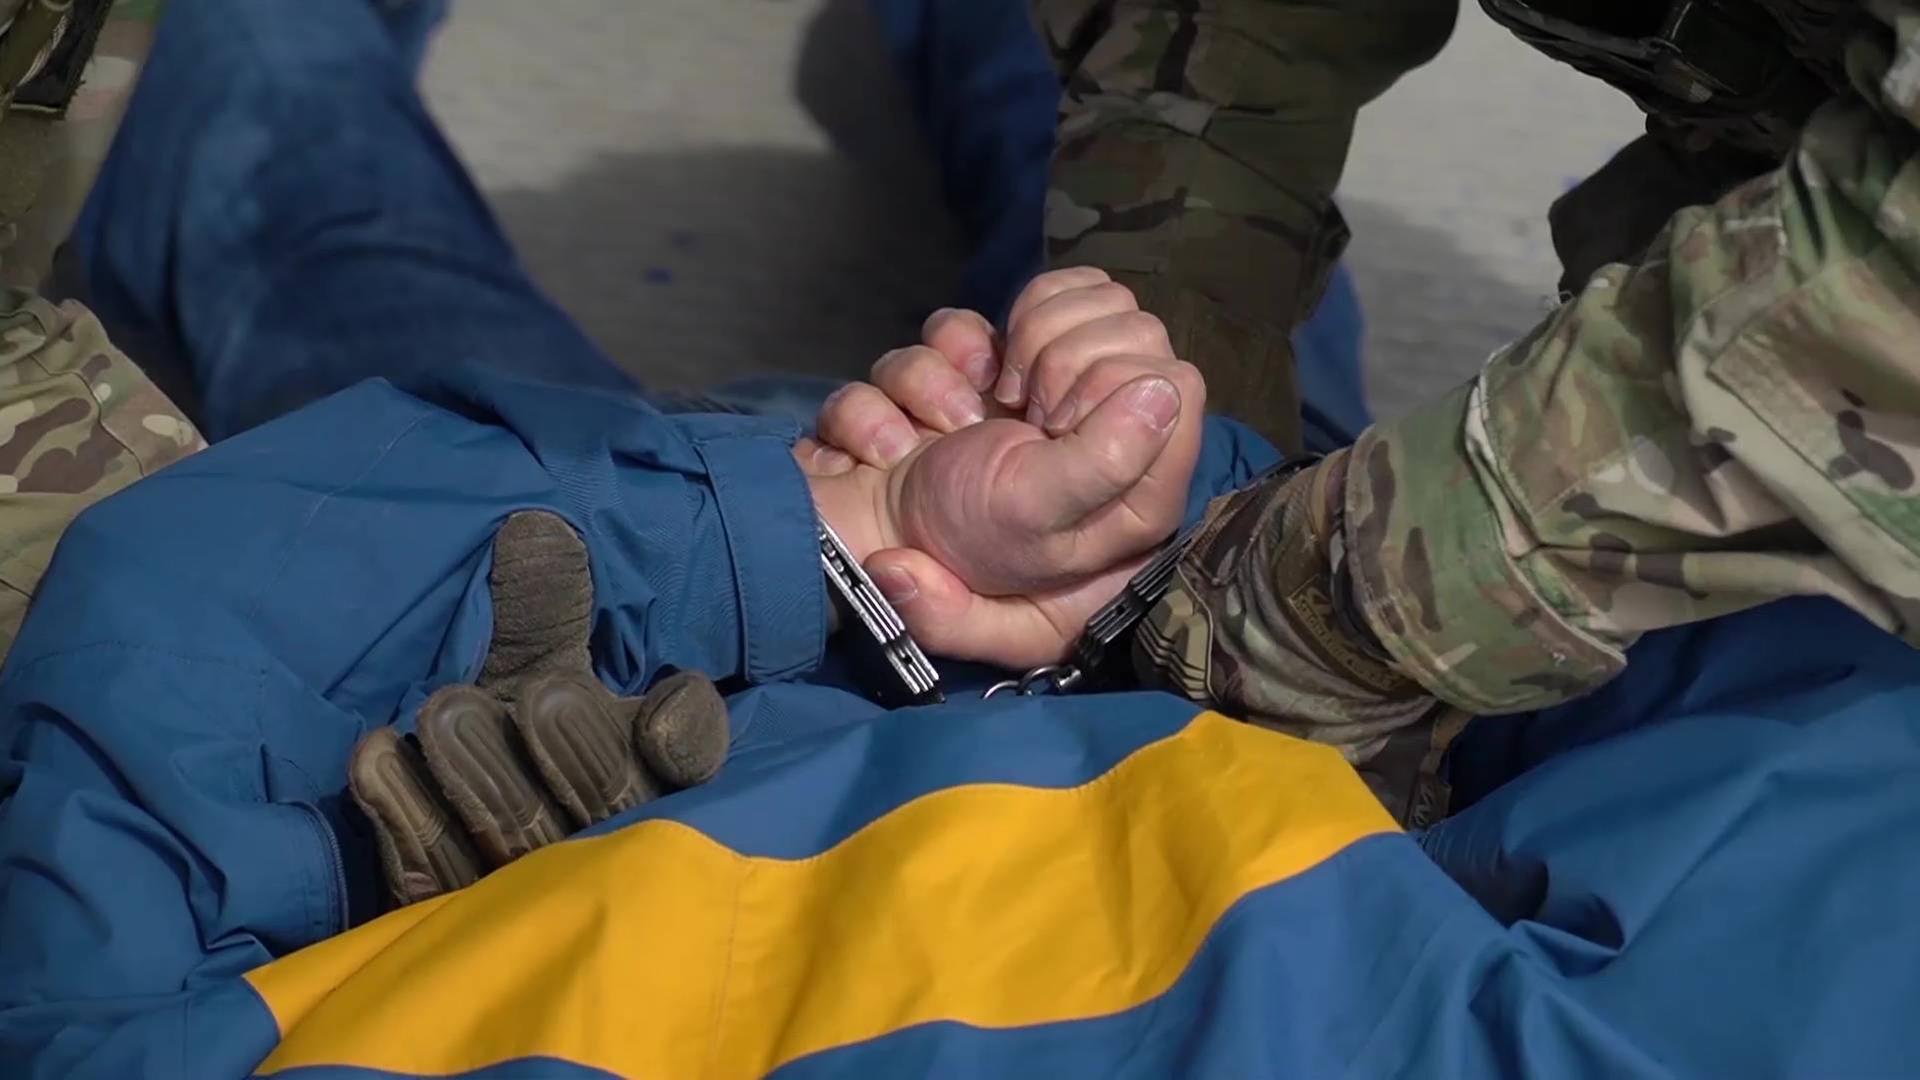 Ein Körper, der auf dem Rücken liegt, bekommt Handschellen von einer Person in einem Camouflage-Anzug angelegt